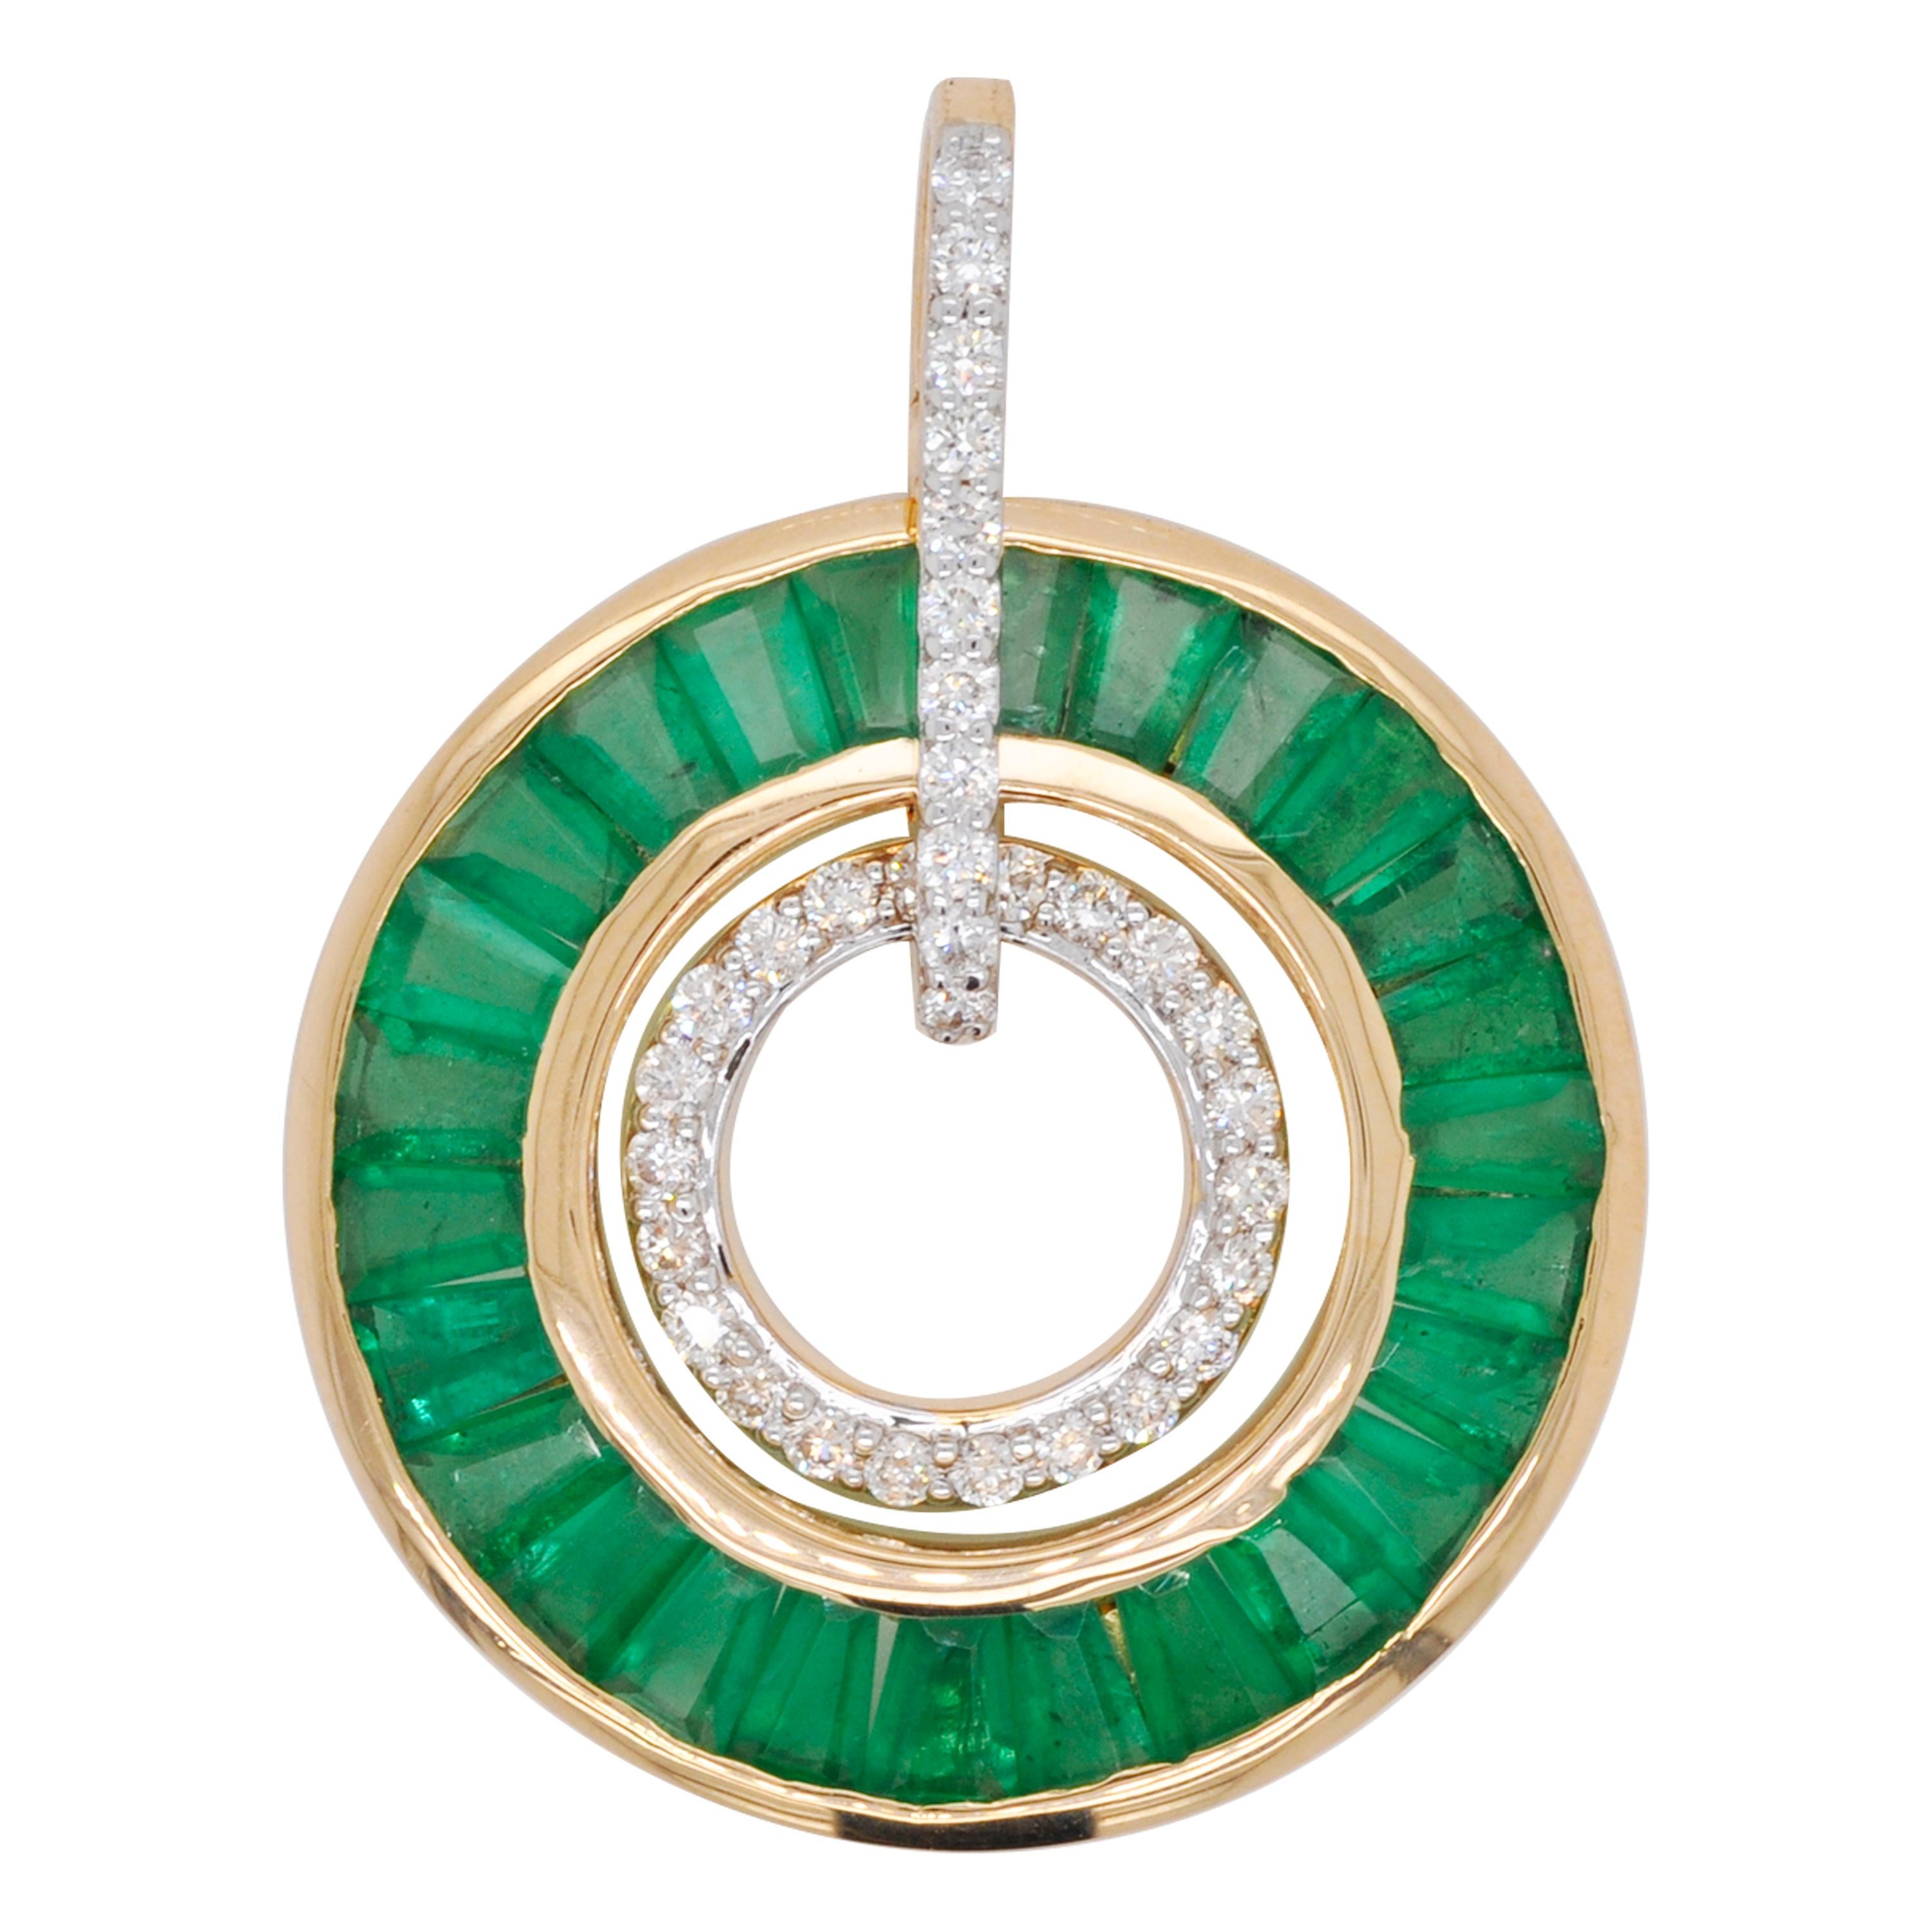 Pendentif circulaire de style Art déco en or 18 carats avec émeraudes et diamants baguettes effilés